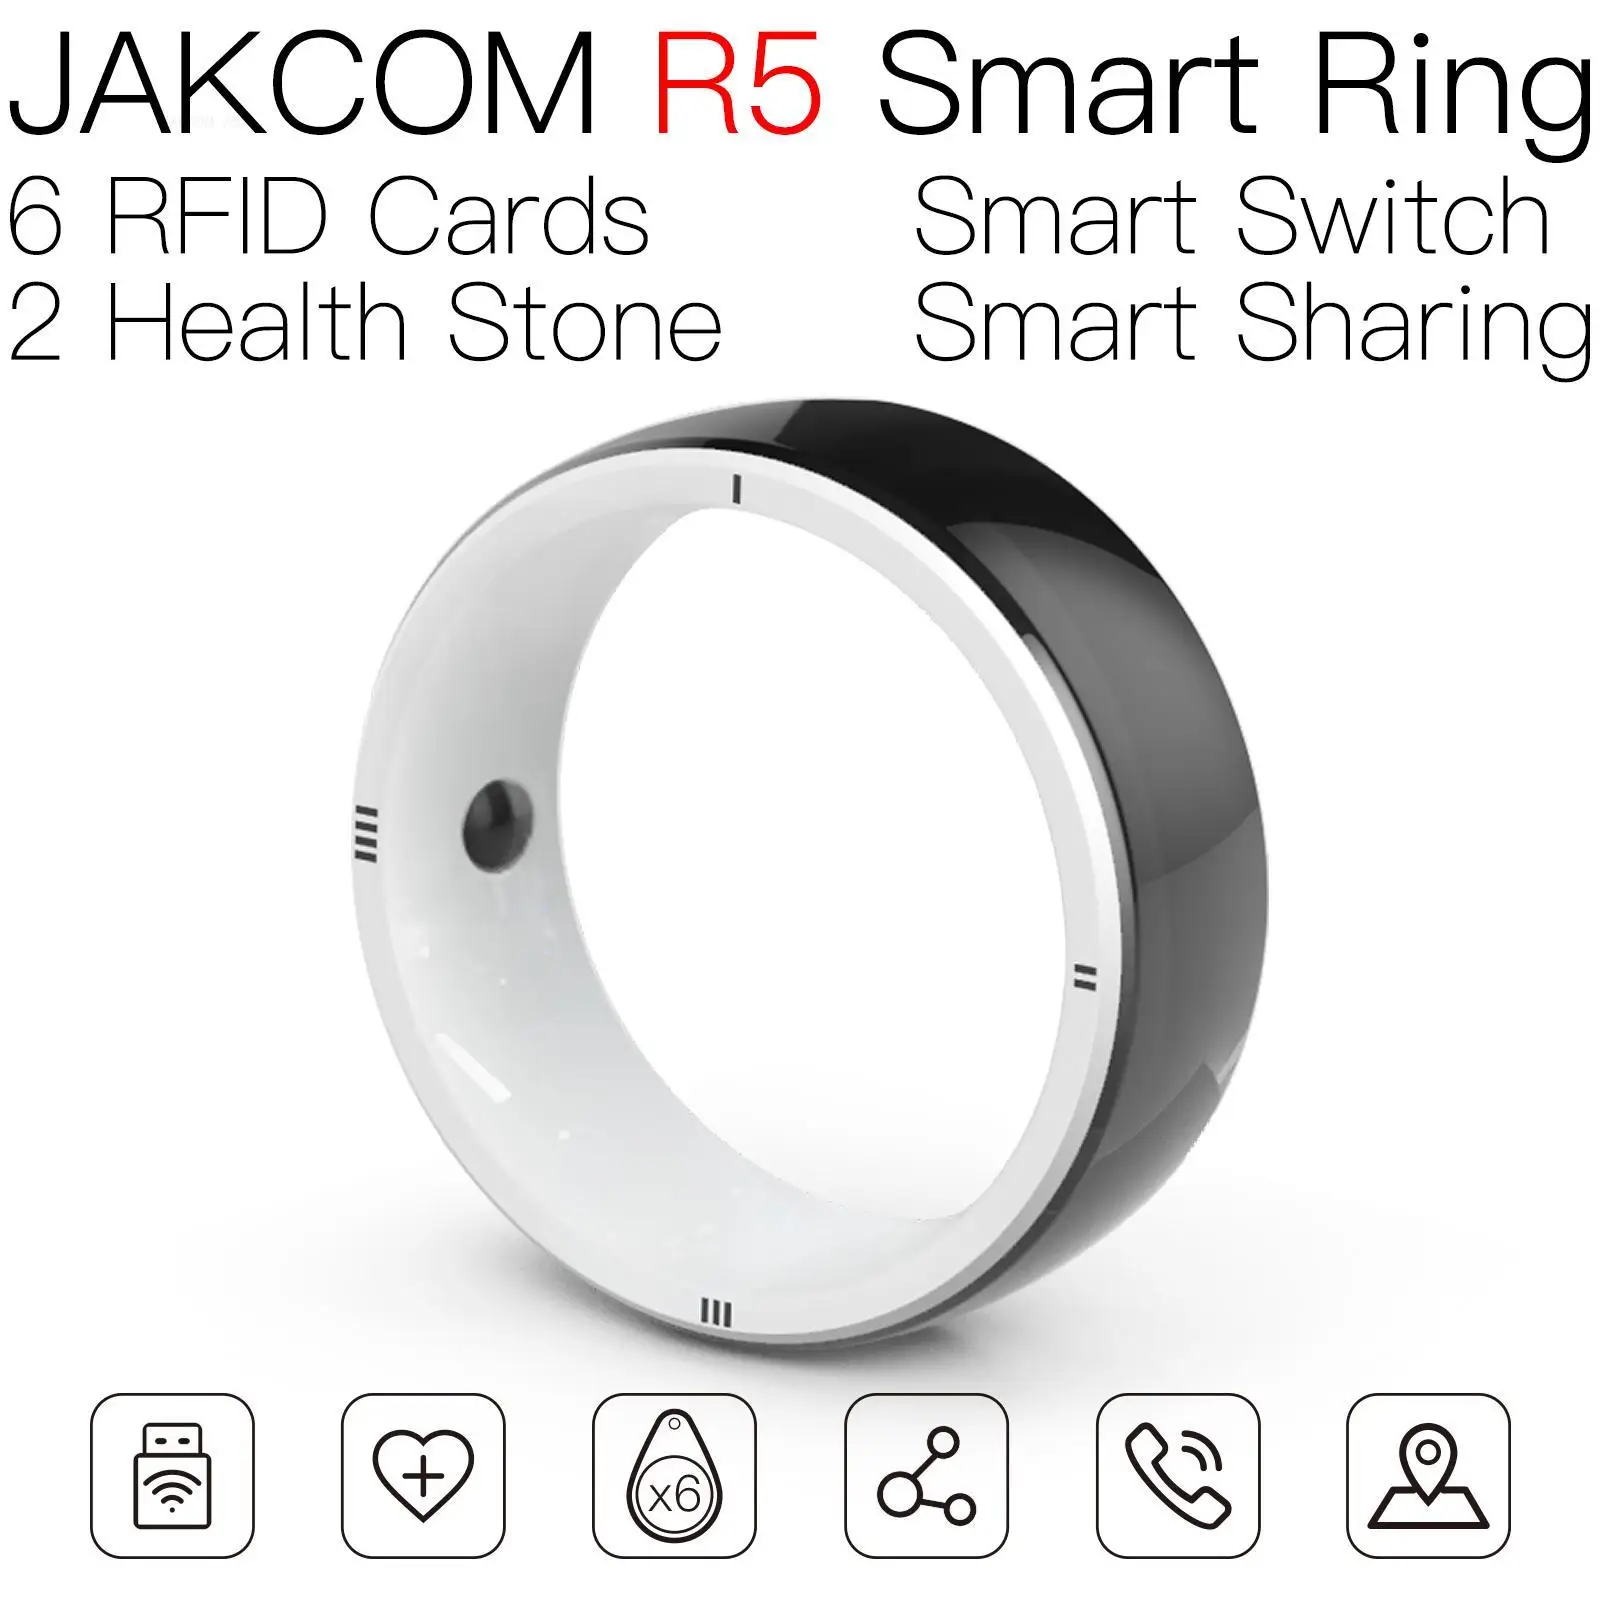 

Смарт-кольцо JAKCOM R5, супер значение, чем микрочип, рыба, ntag wet office 365, карта для активации ключа, фауна dy 125 кГц